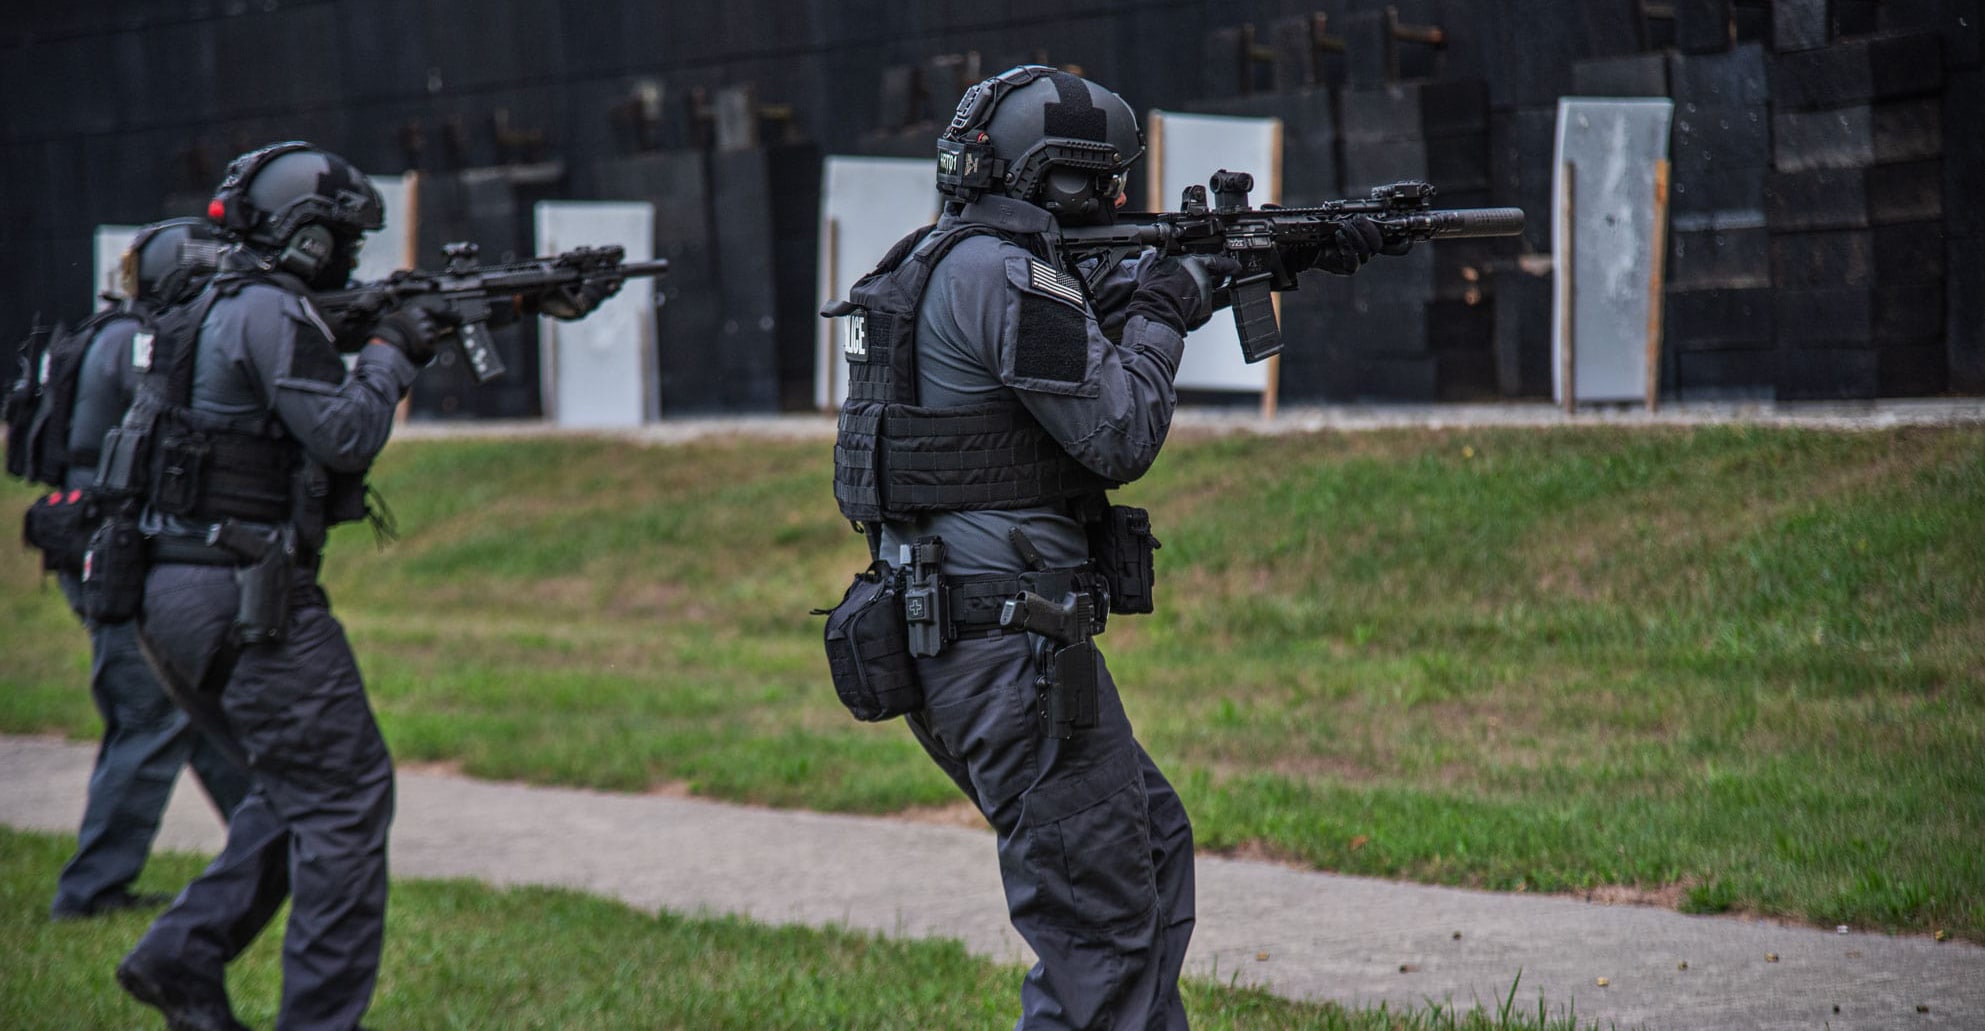 Tactical Gear in Firearms Training - HRT Tactical Gear HRT